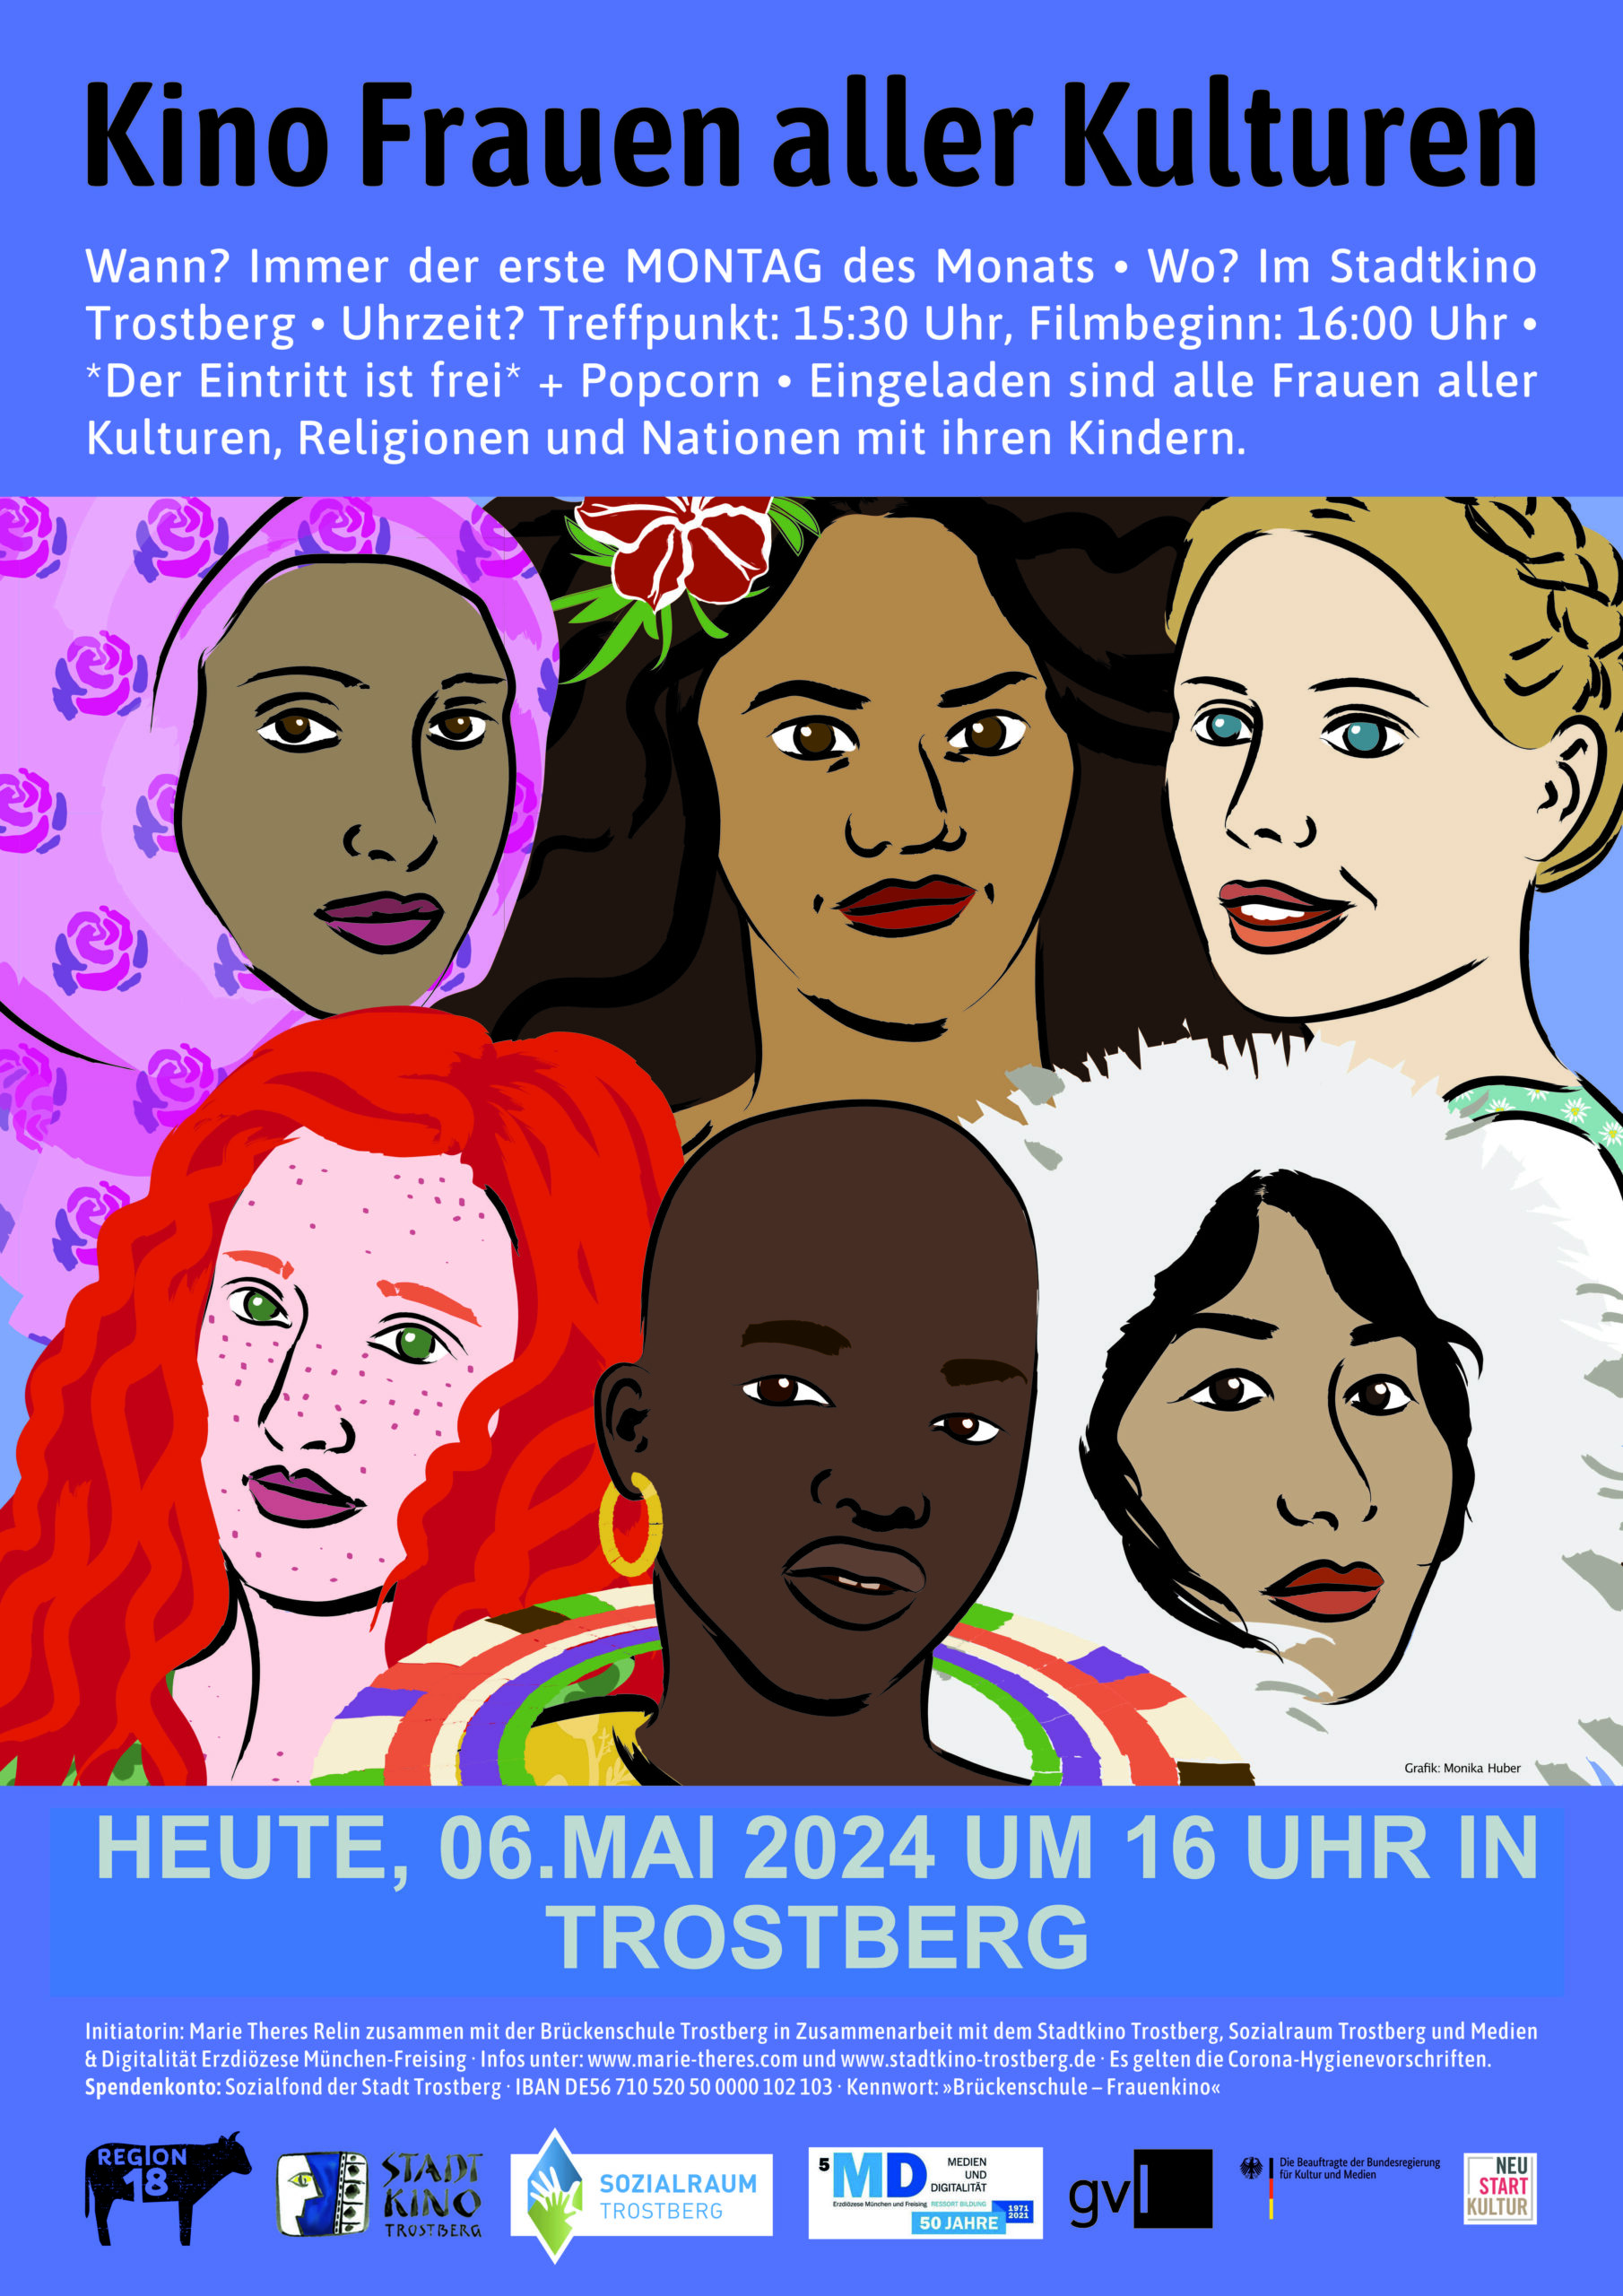 Mehr über den Artikel erfahren Kino Frauen aller Kulturen Trostberg 06. Mai 2024